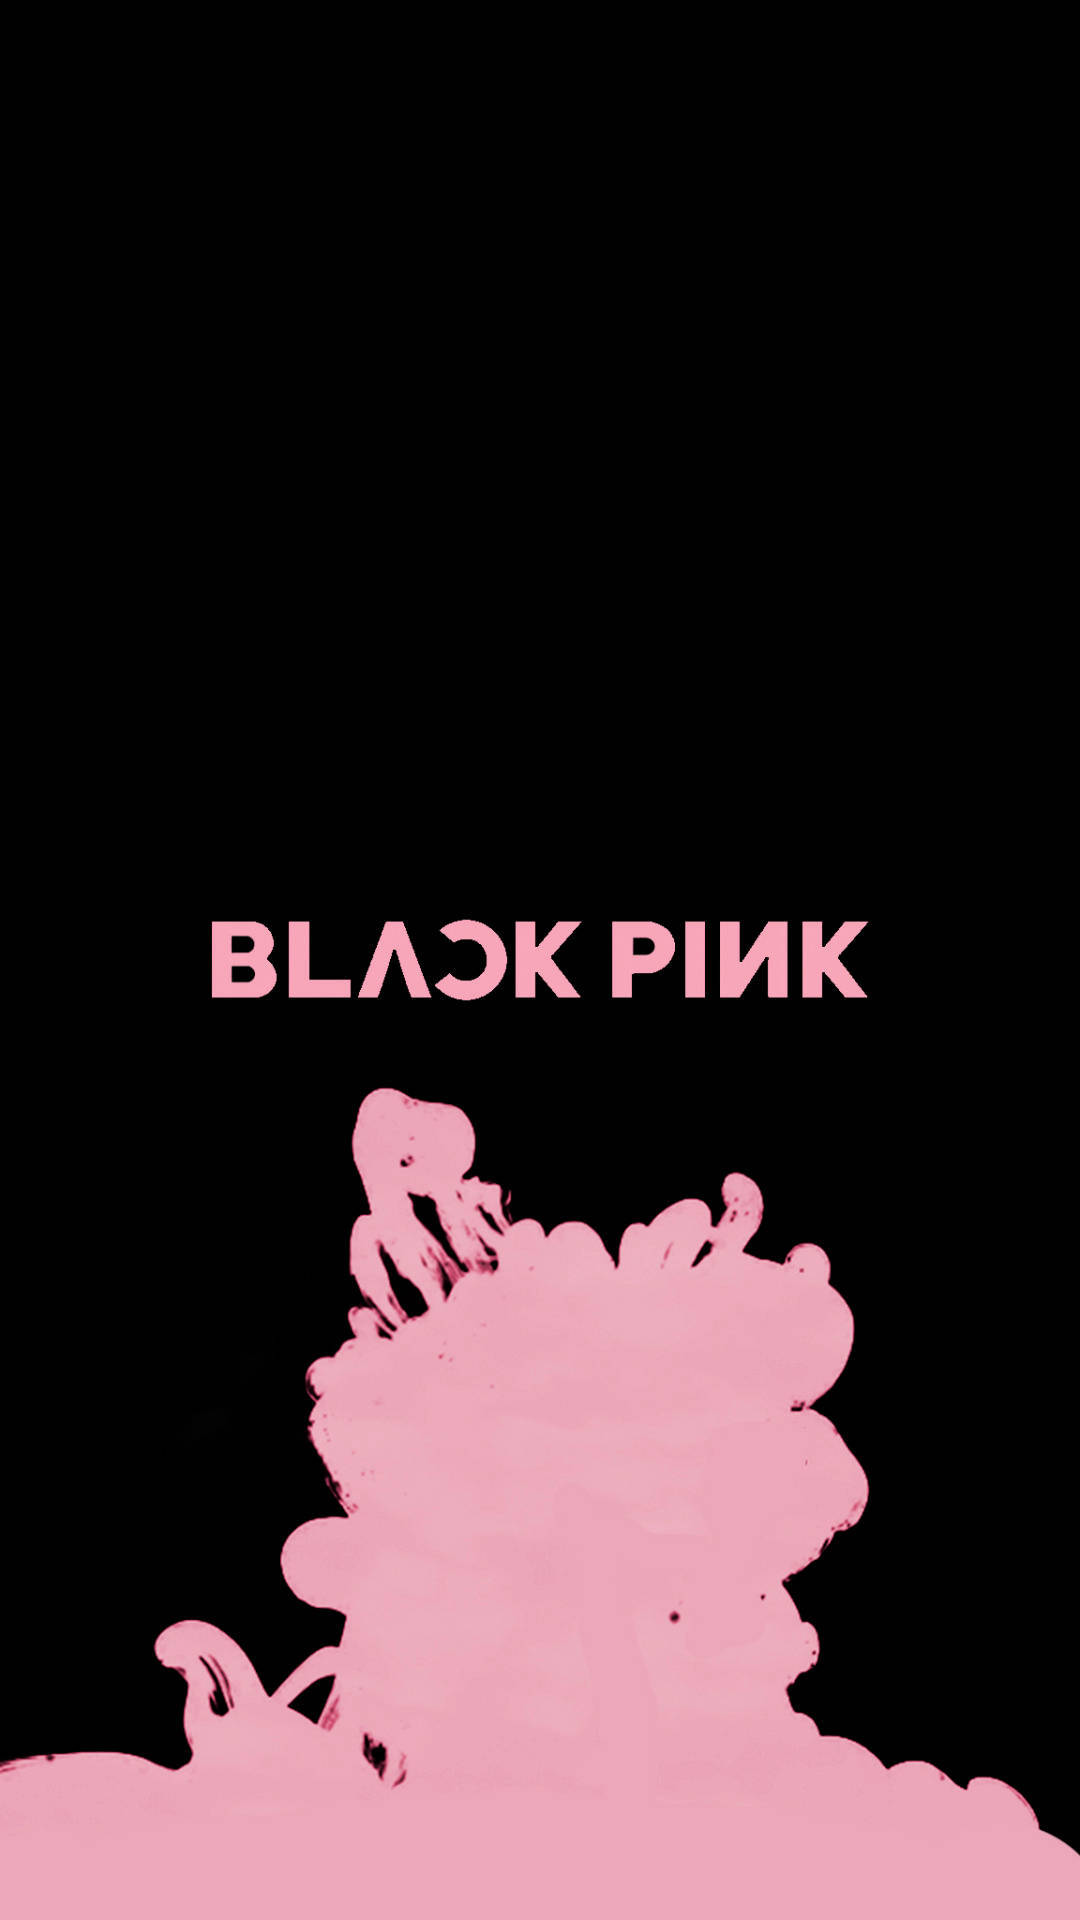 Blackpink Logo With Pink Smoke Wallpaper